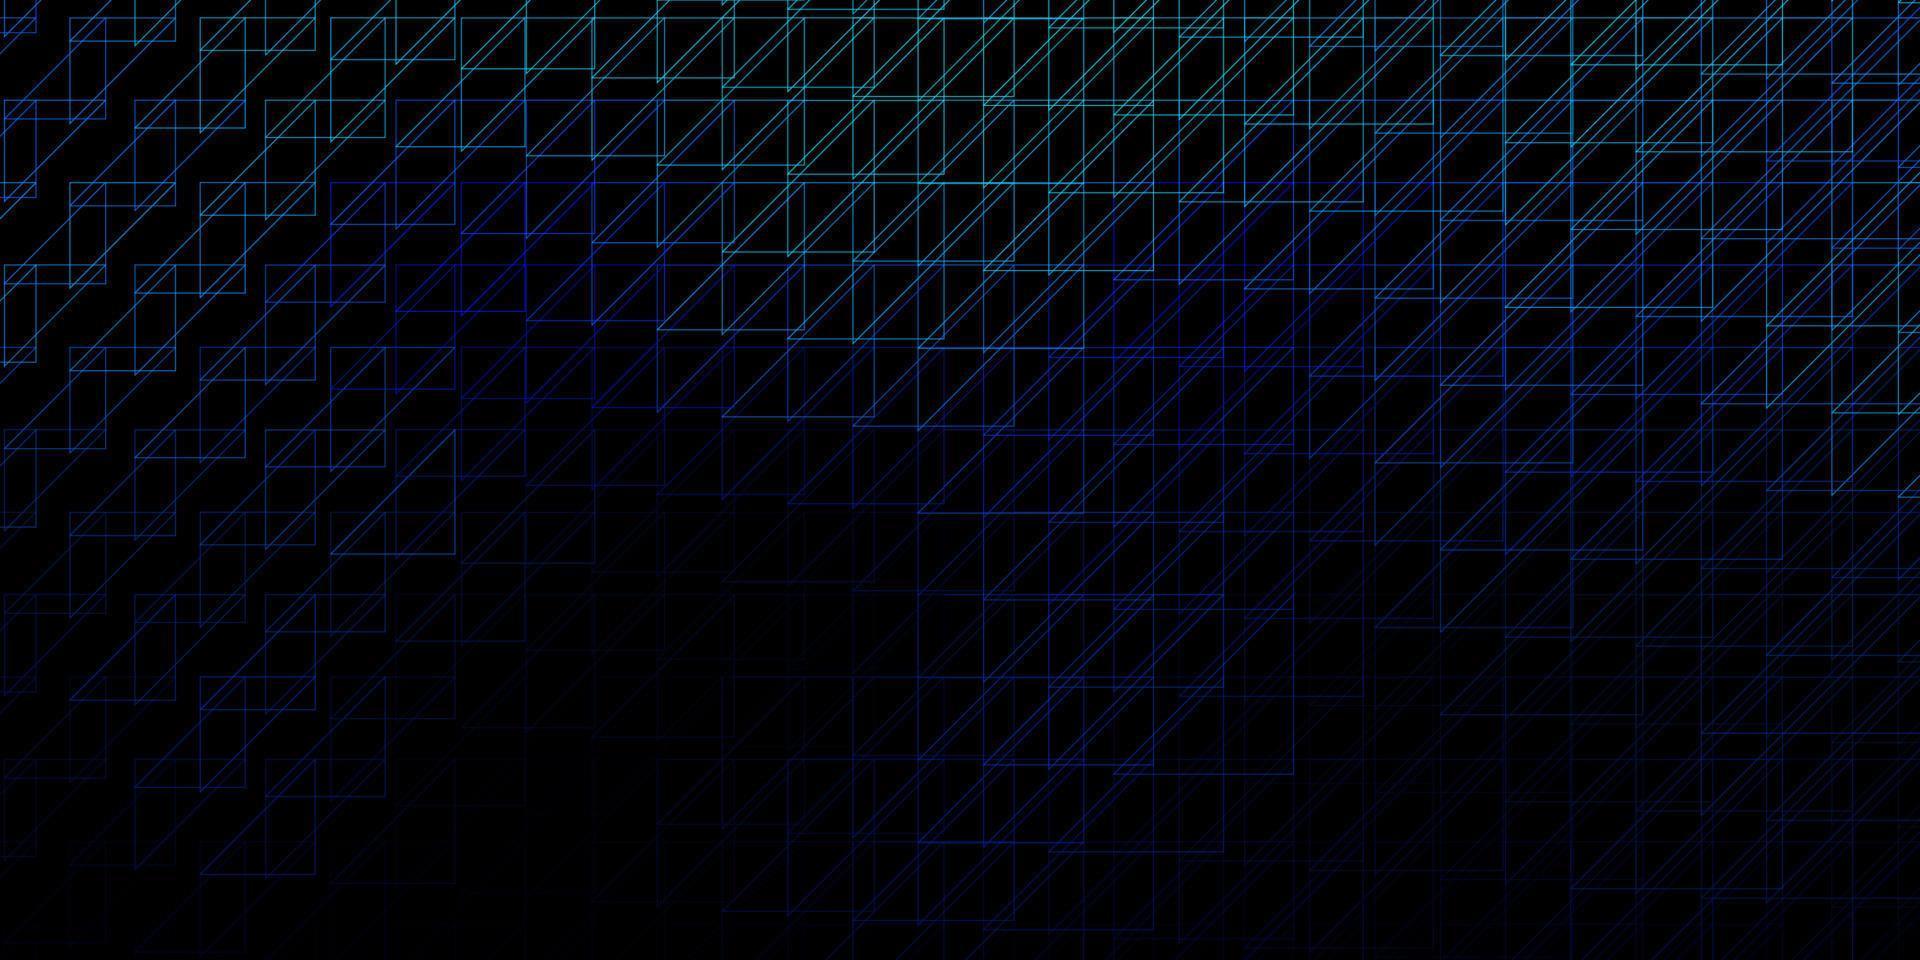 Fondo de vector azul oscuro con líneas.